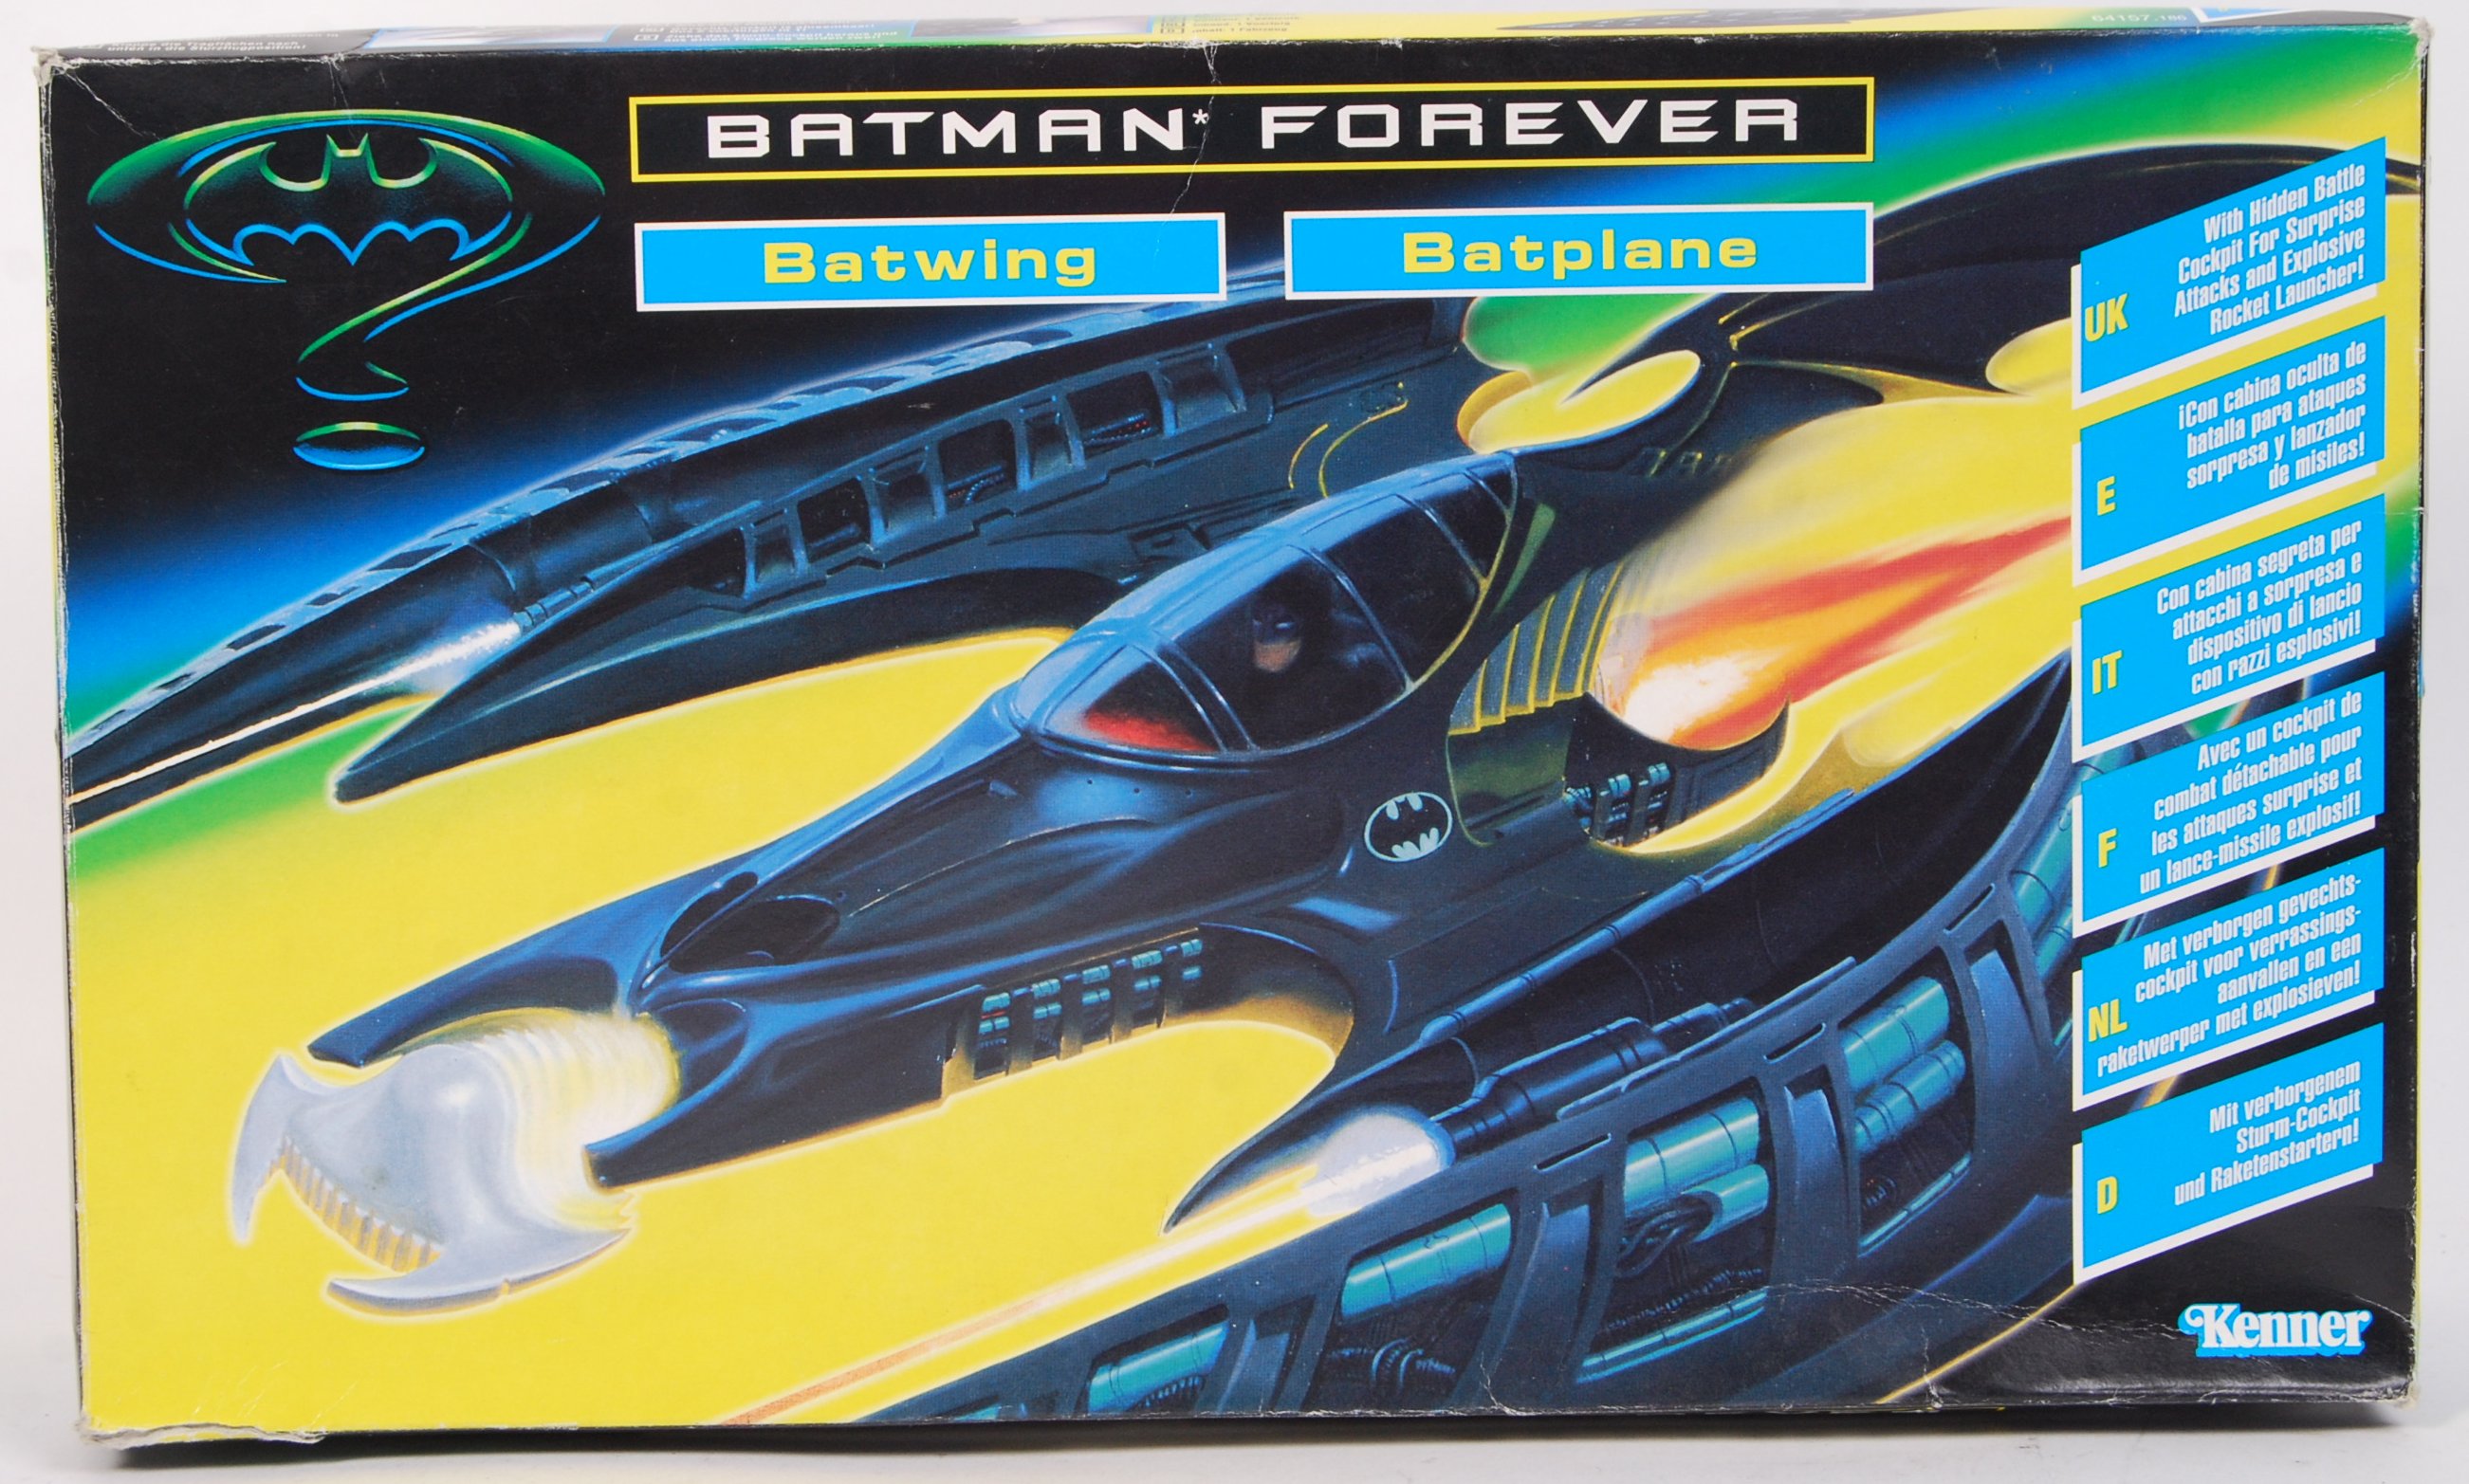 Kenner Batman Forever Batwing Bat Wing Vehicle 1995 64157 for sale online 